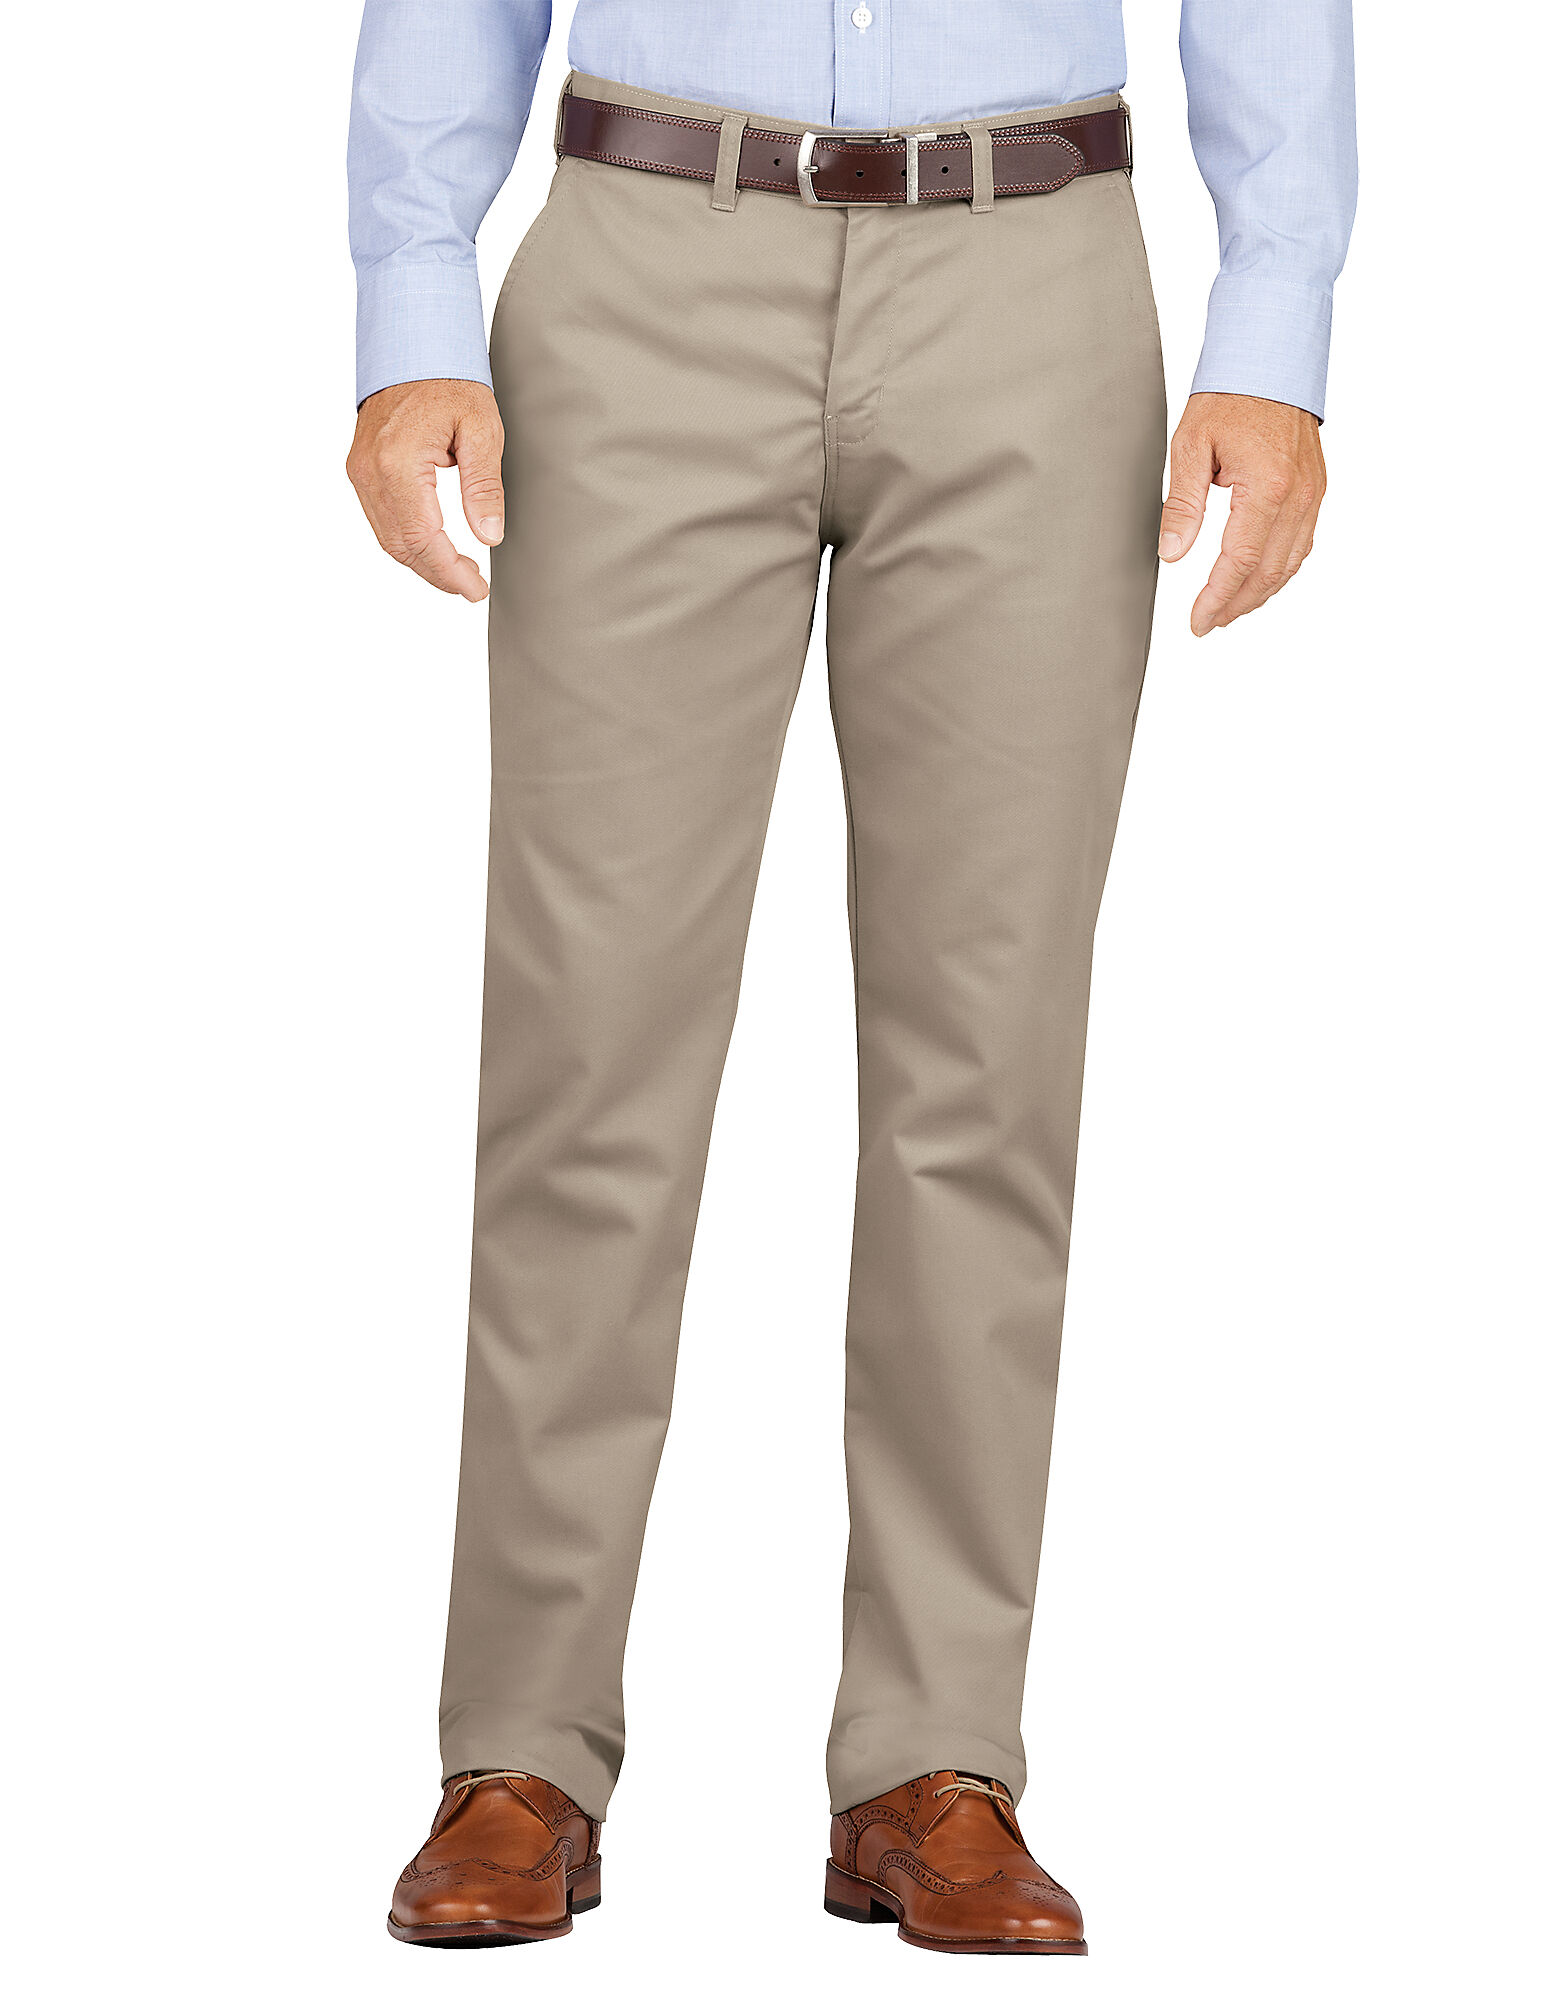 Khaki Dress Pants For Men Desert Khaki | Slit Fit & Tapered Leg | Dickies